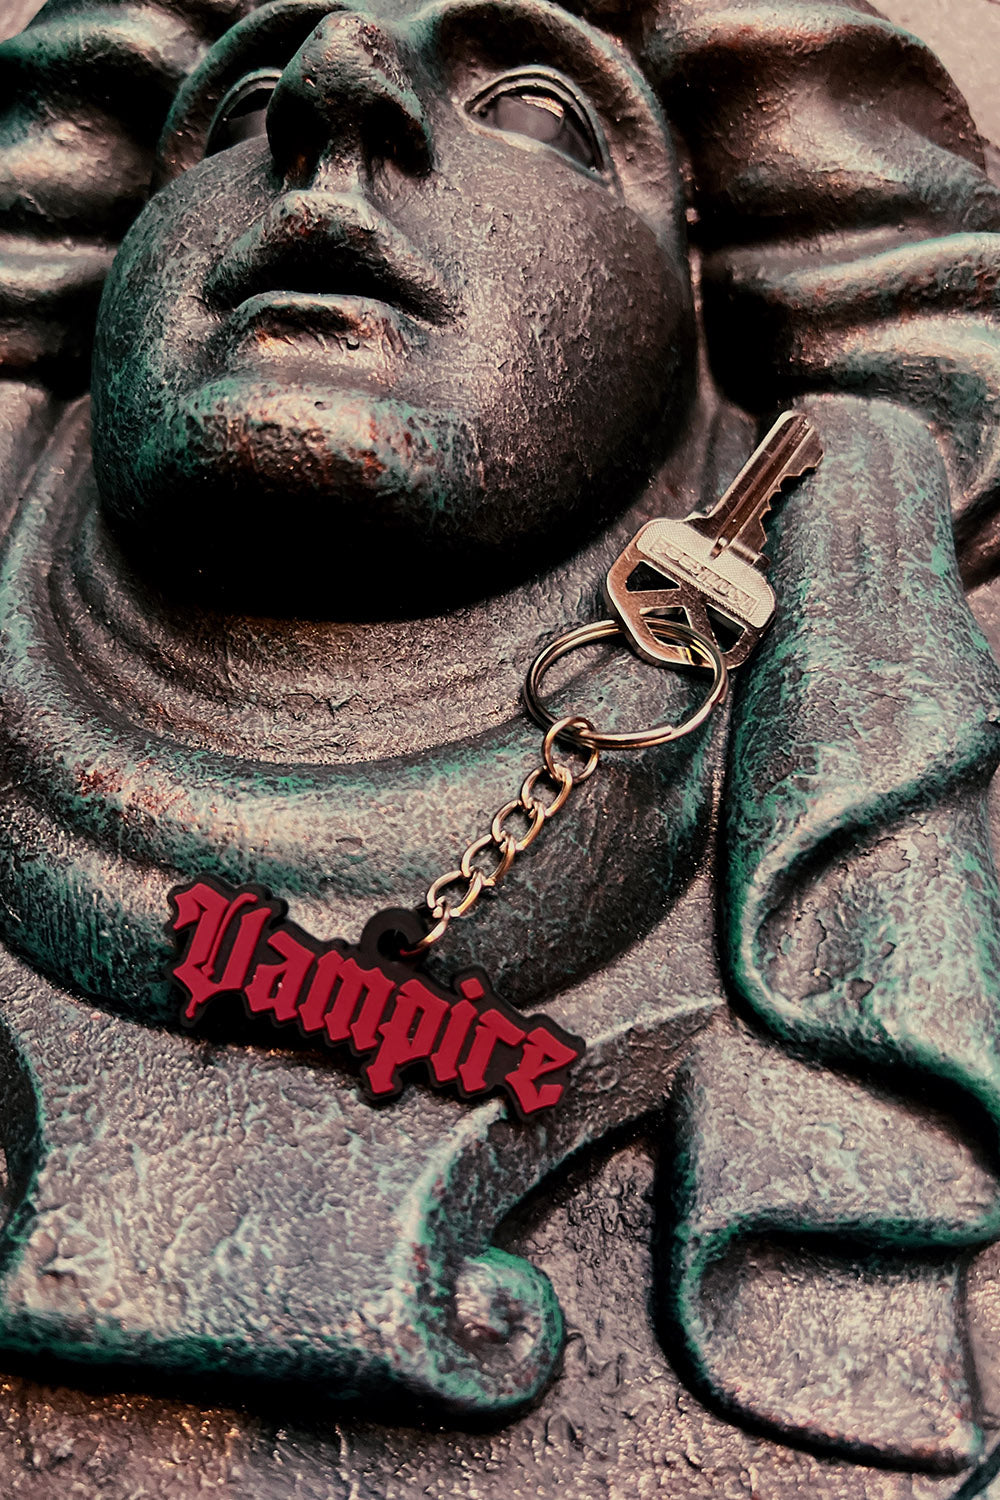 vampire key ring charm